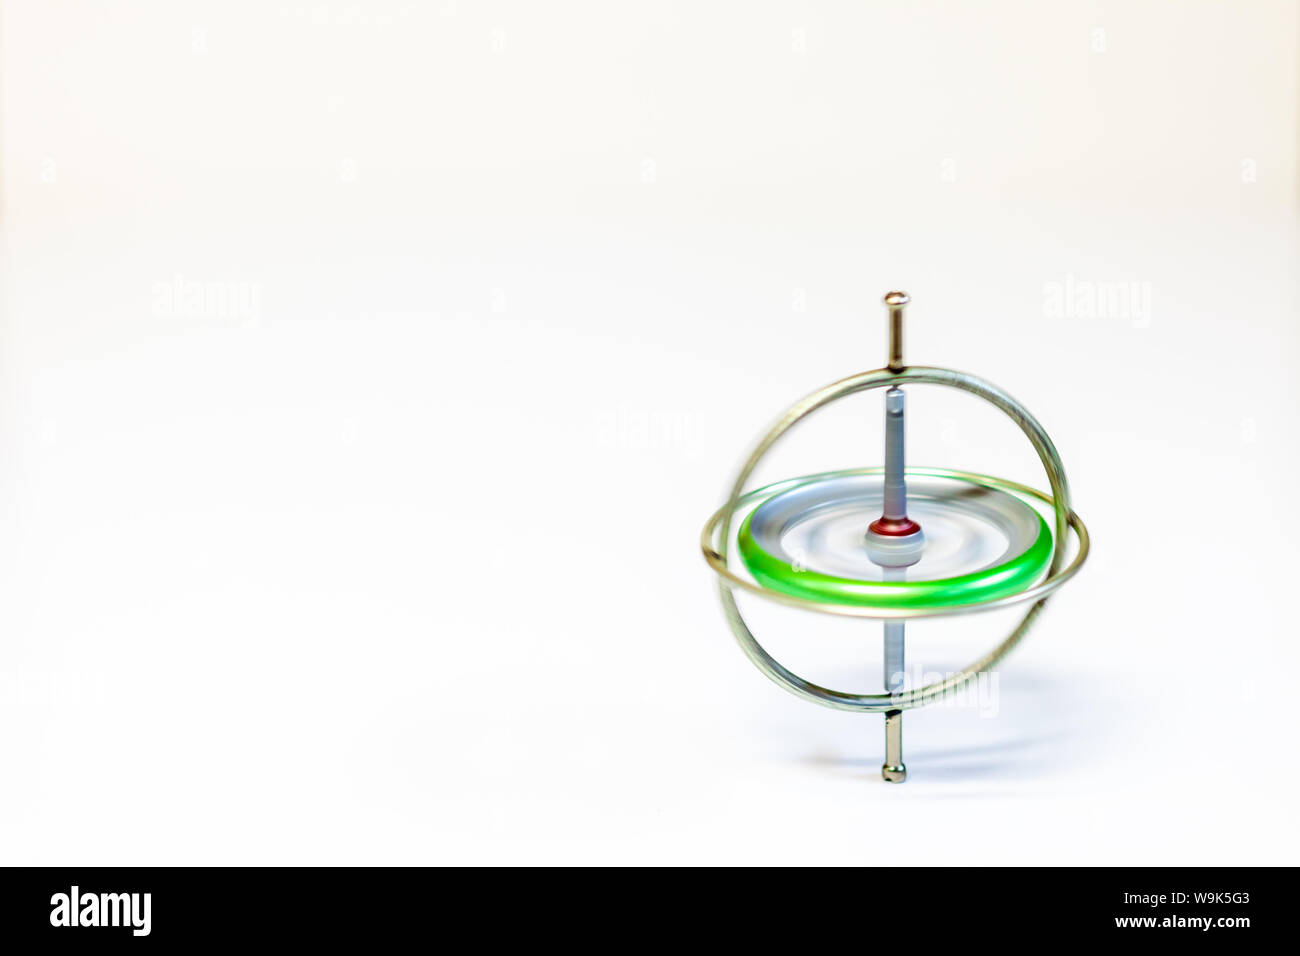 Un juguete de metal hilado giroscopio aislado sobre un fondo blanco. Foto de stock